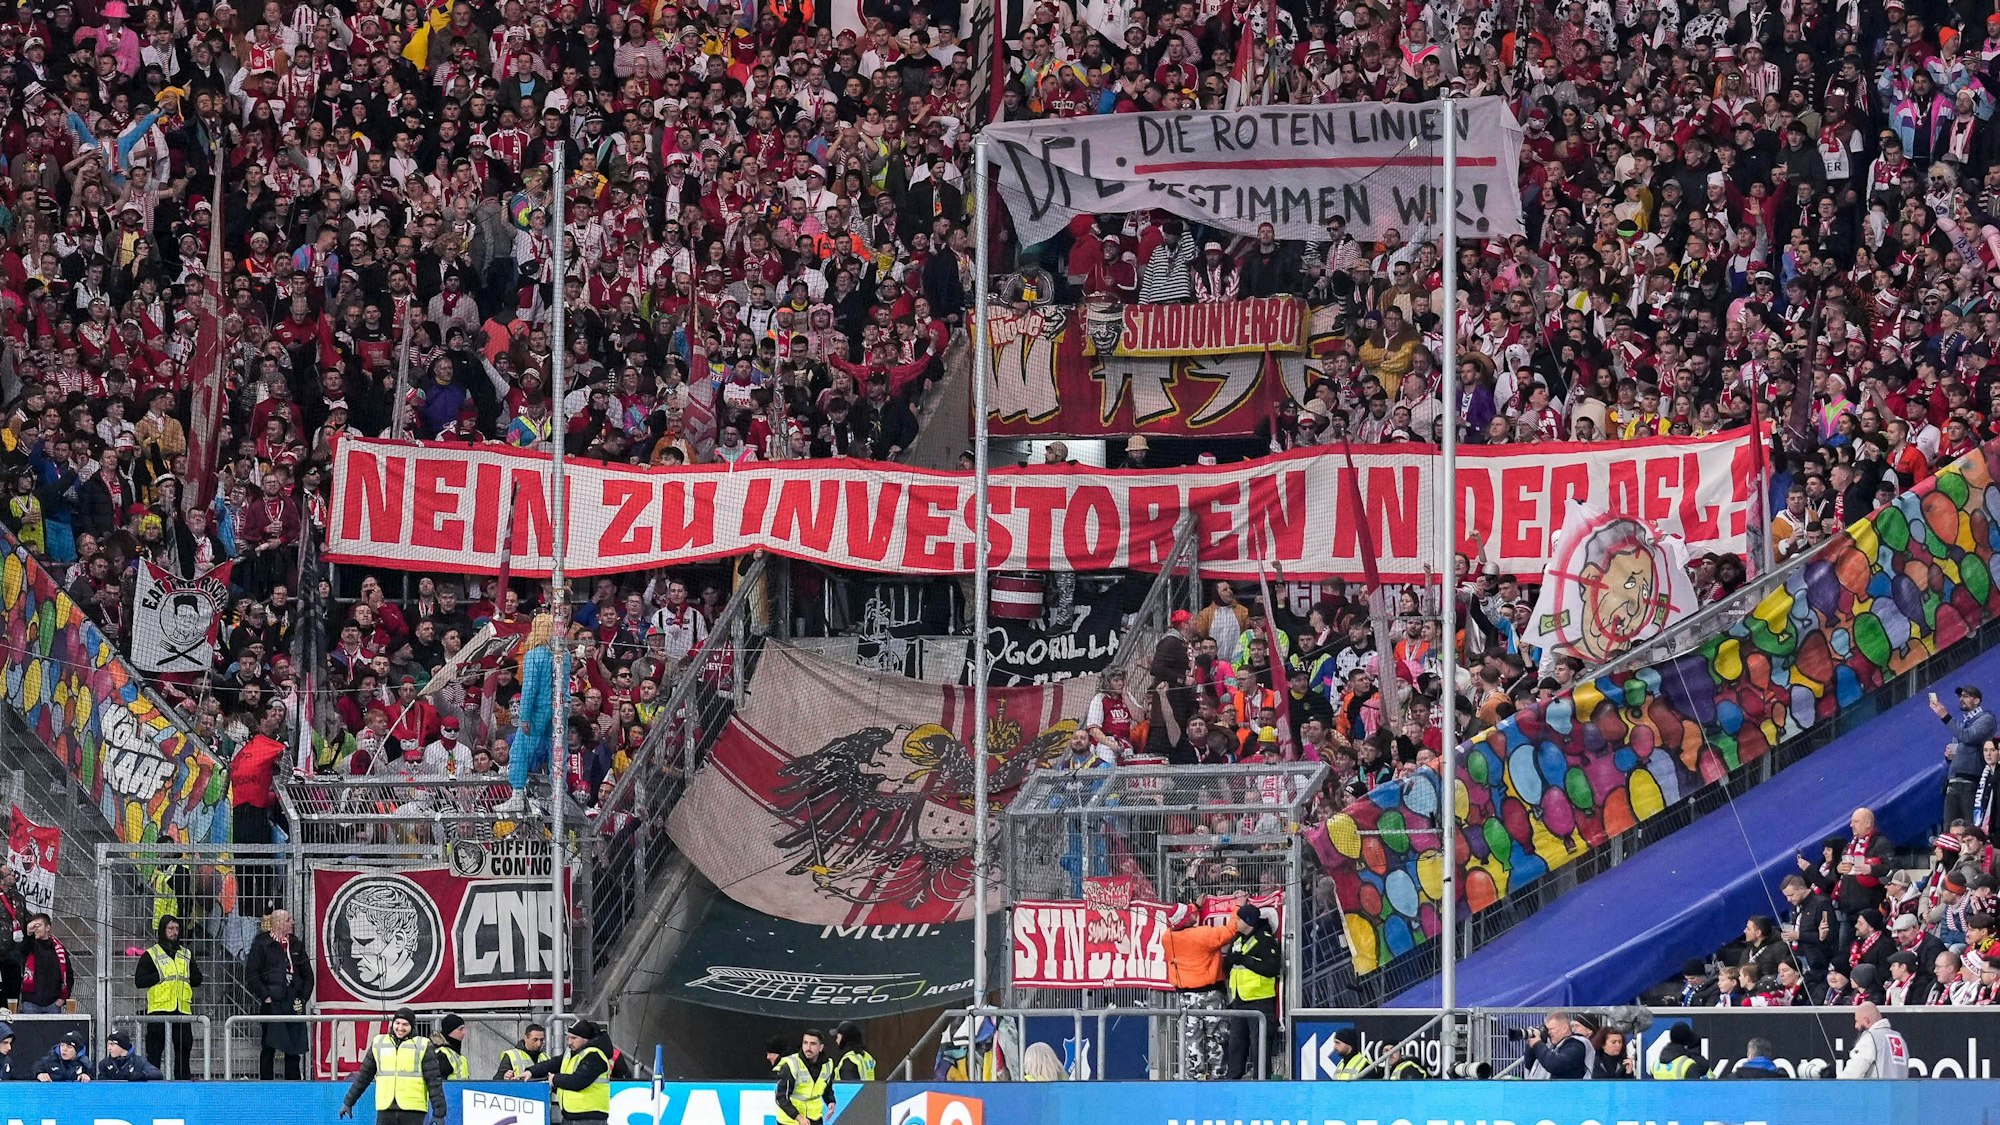 Die Fans vom 1. FC Köln zeigen in der Fankurve ein Banner, Spruchband mit der Aufschrift: DFL - Die roten Linien bestimmen wir und Nein zu Investoren in der DFL, Fans, Ultras Publikum, Zuschauer, Stimmung, Atmosphäre, Stadion, Protest, Protestaktion gegen die DFL und den geplanten Einstieg eines Investors.